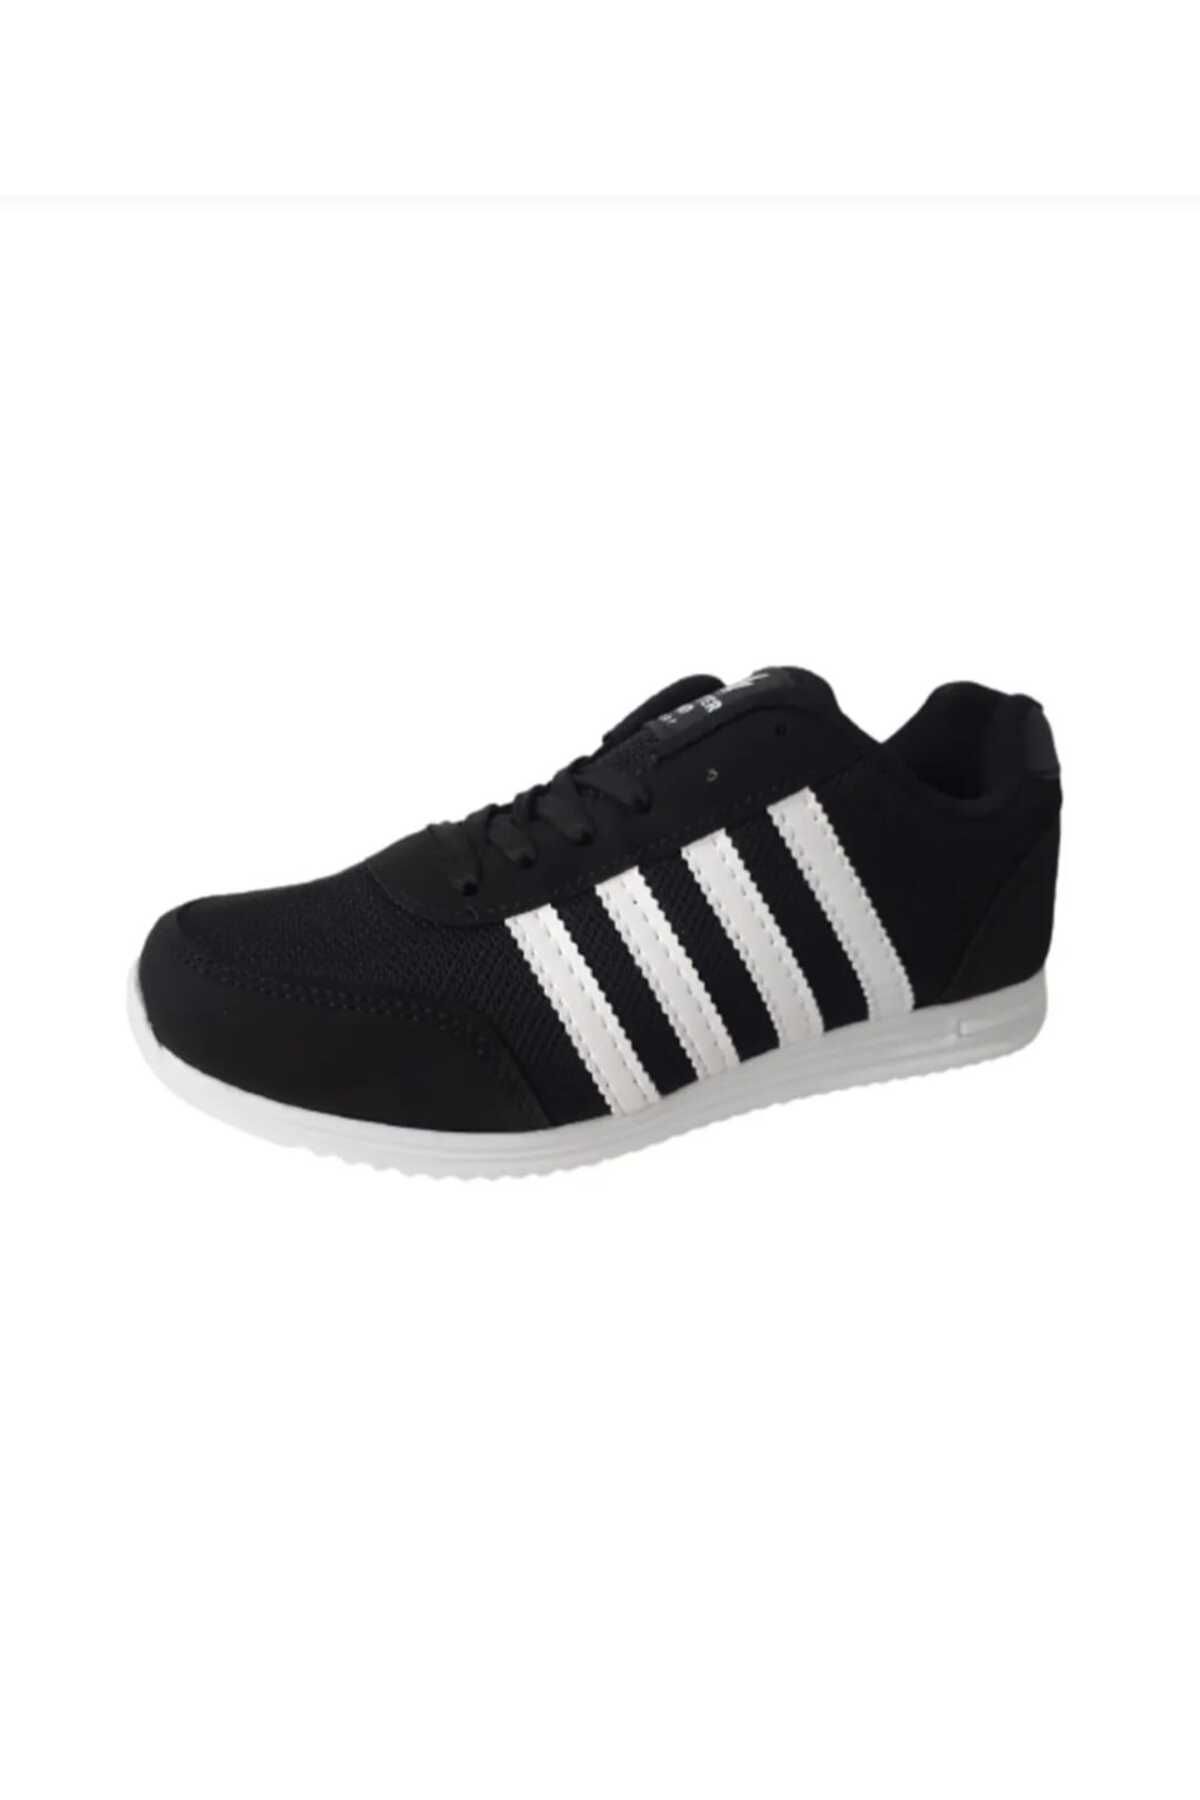 Esterella unisex Günlük Sneaker/ Rahat Bağcıklı Spor Yazlık Hafif Ayakkabı/anorak  siyah-beyaz renk